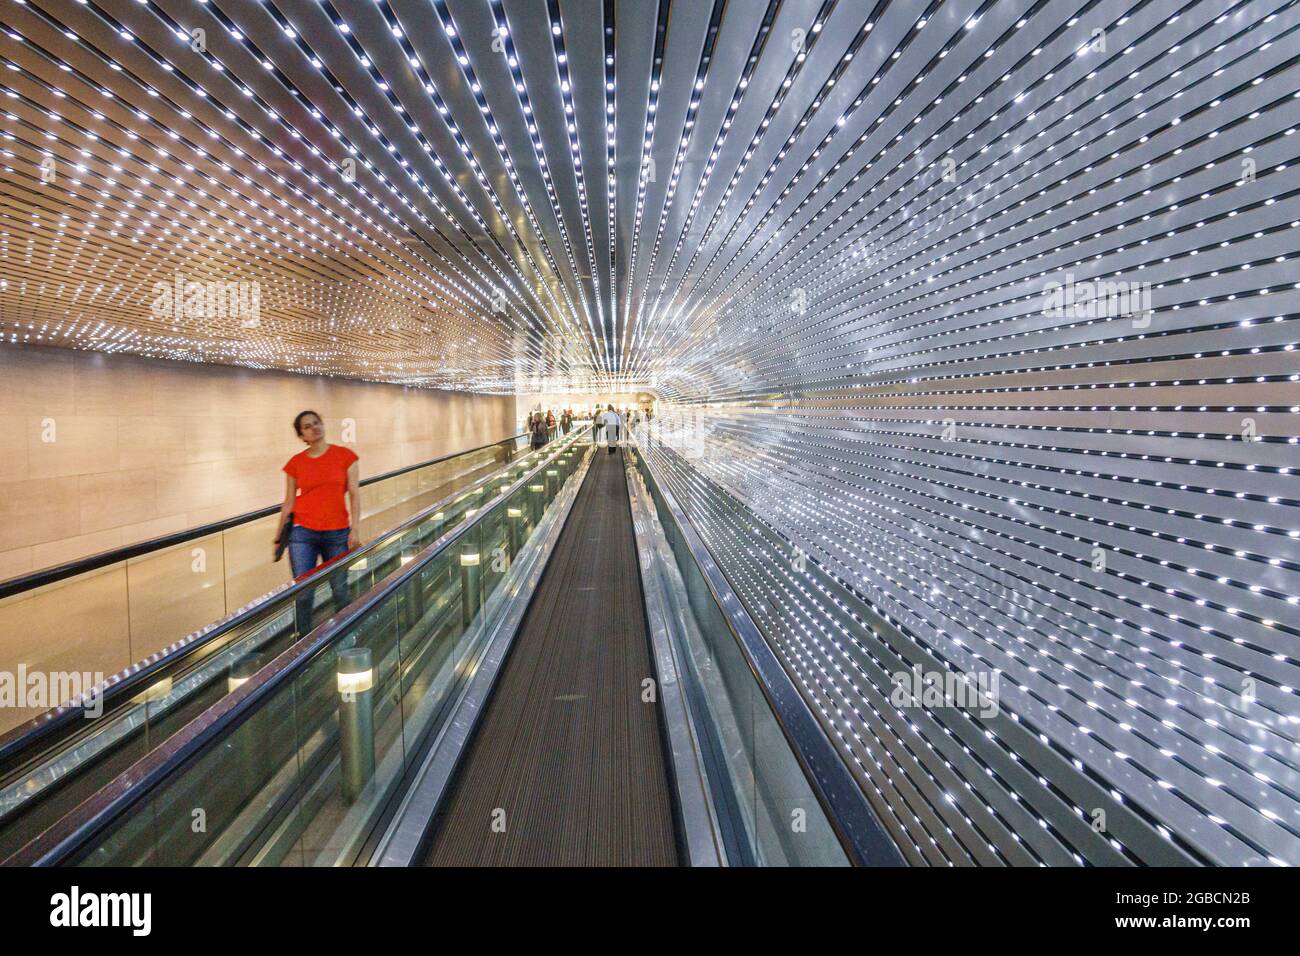 Washington DC, Musée de la National Gallery of Art, souterrain Multiverse Light sculpture Leo Villareal, LED nœuds déplacer passerelle intérieur travellator Banque D'Images